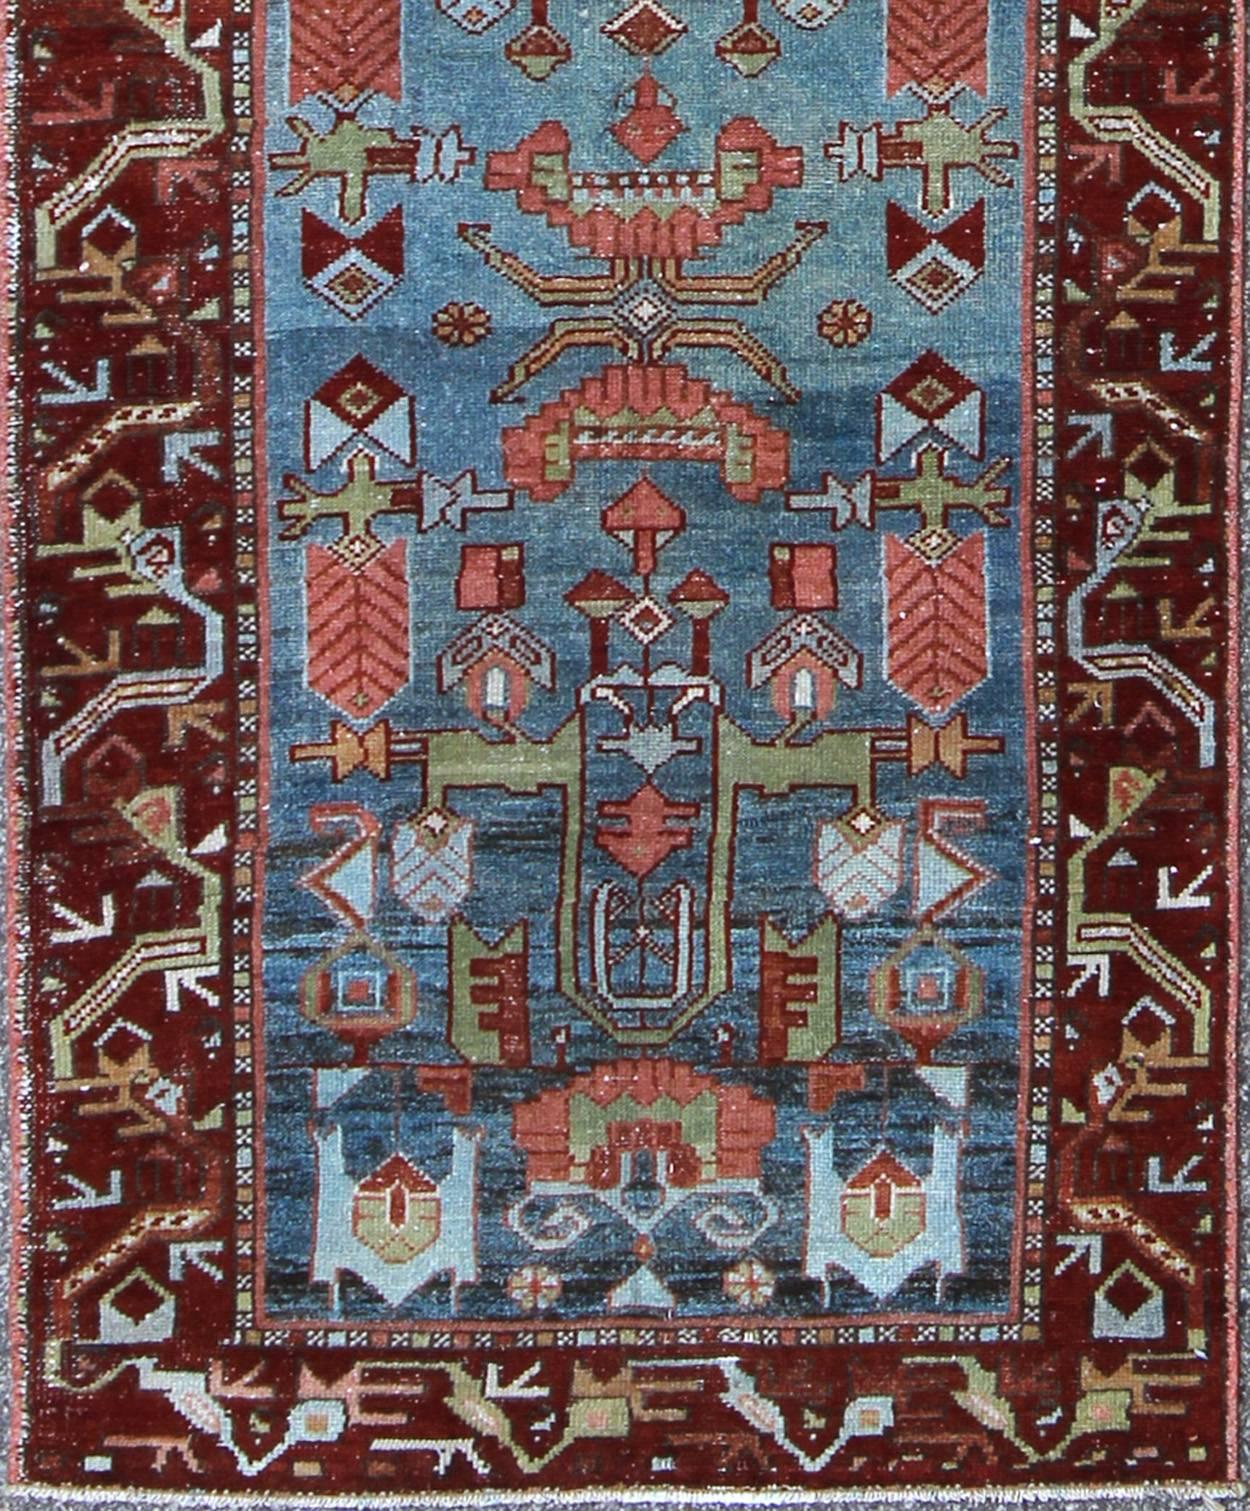 Ce magnifique tapis persan Malayer ancien, d'une taille impressionnante, présente un magnifique motif subgéométrique sur toute sa surface, associé à une délicieuse palette de nuances de bleu moyen, de rouge profond, de rouille, de bleu clair et de